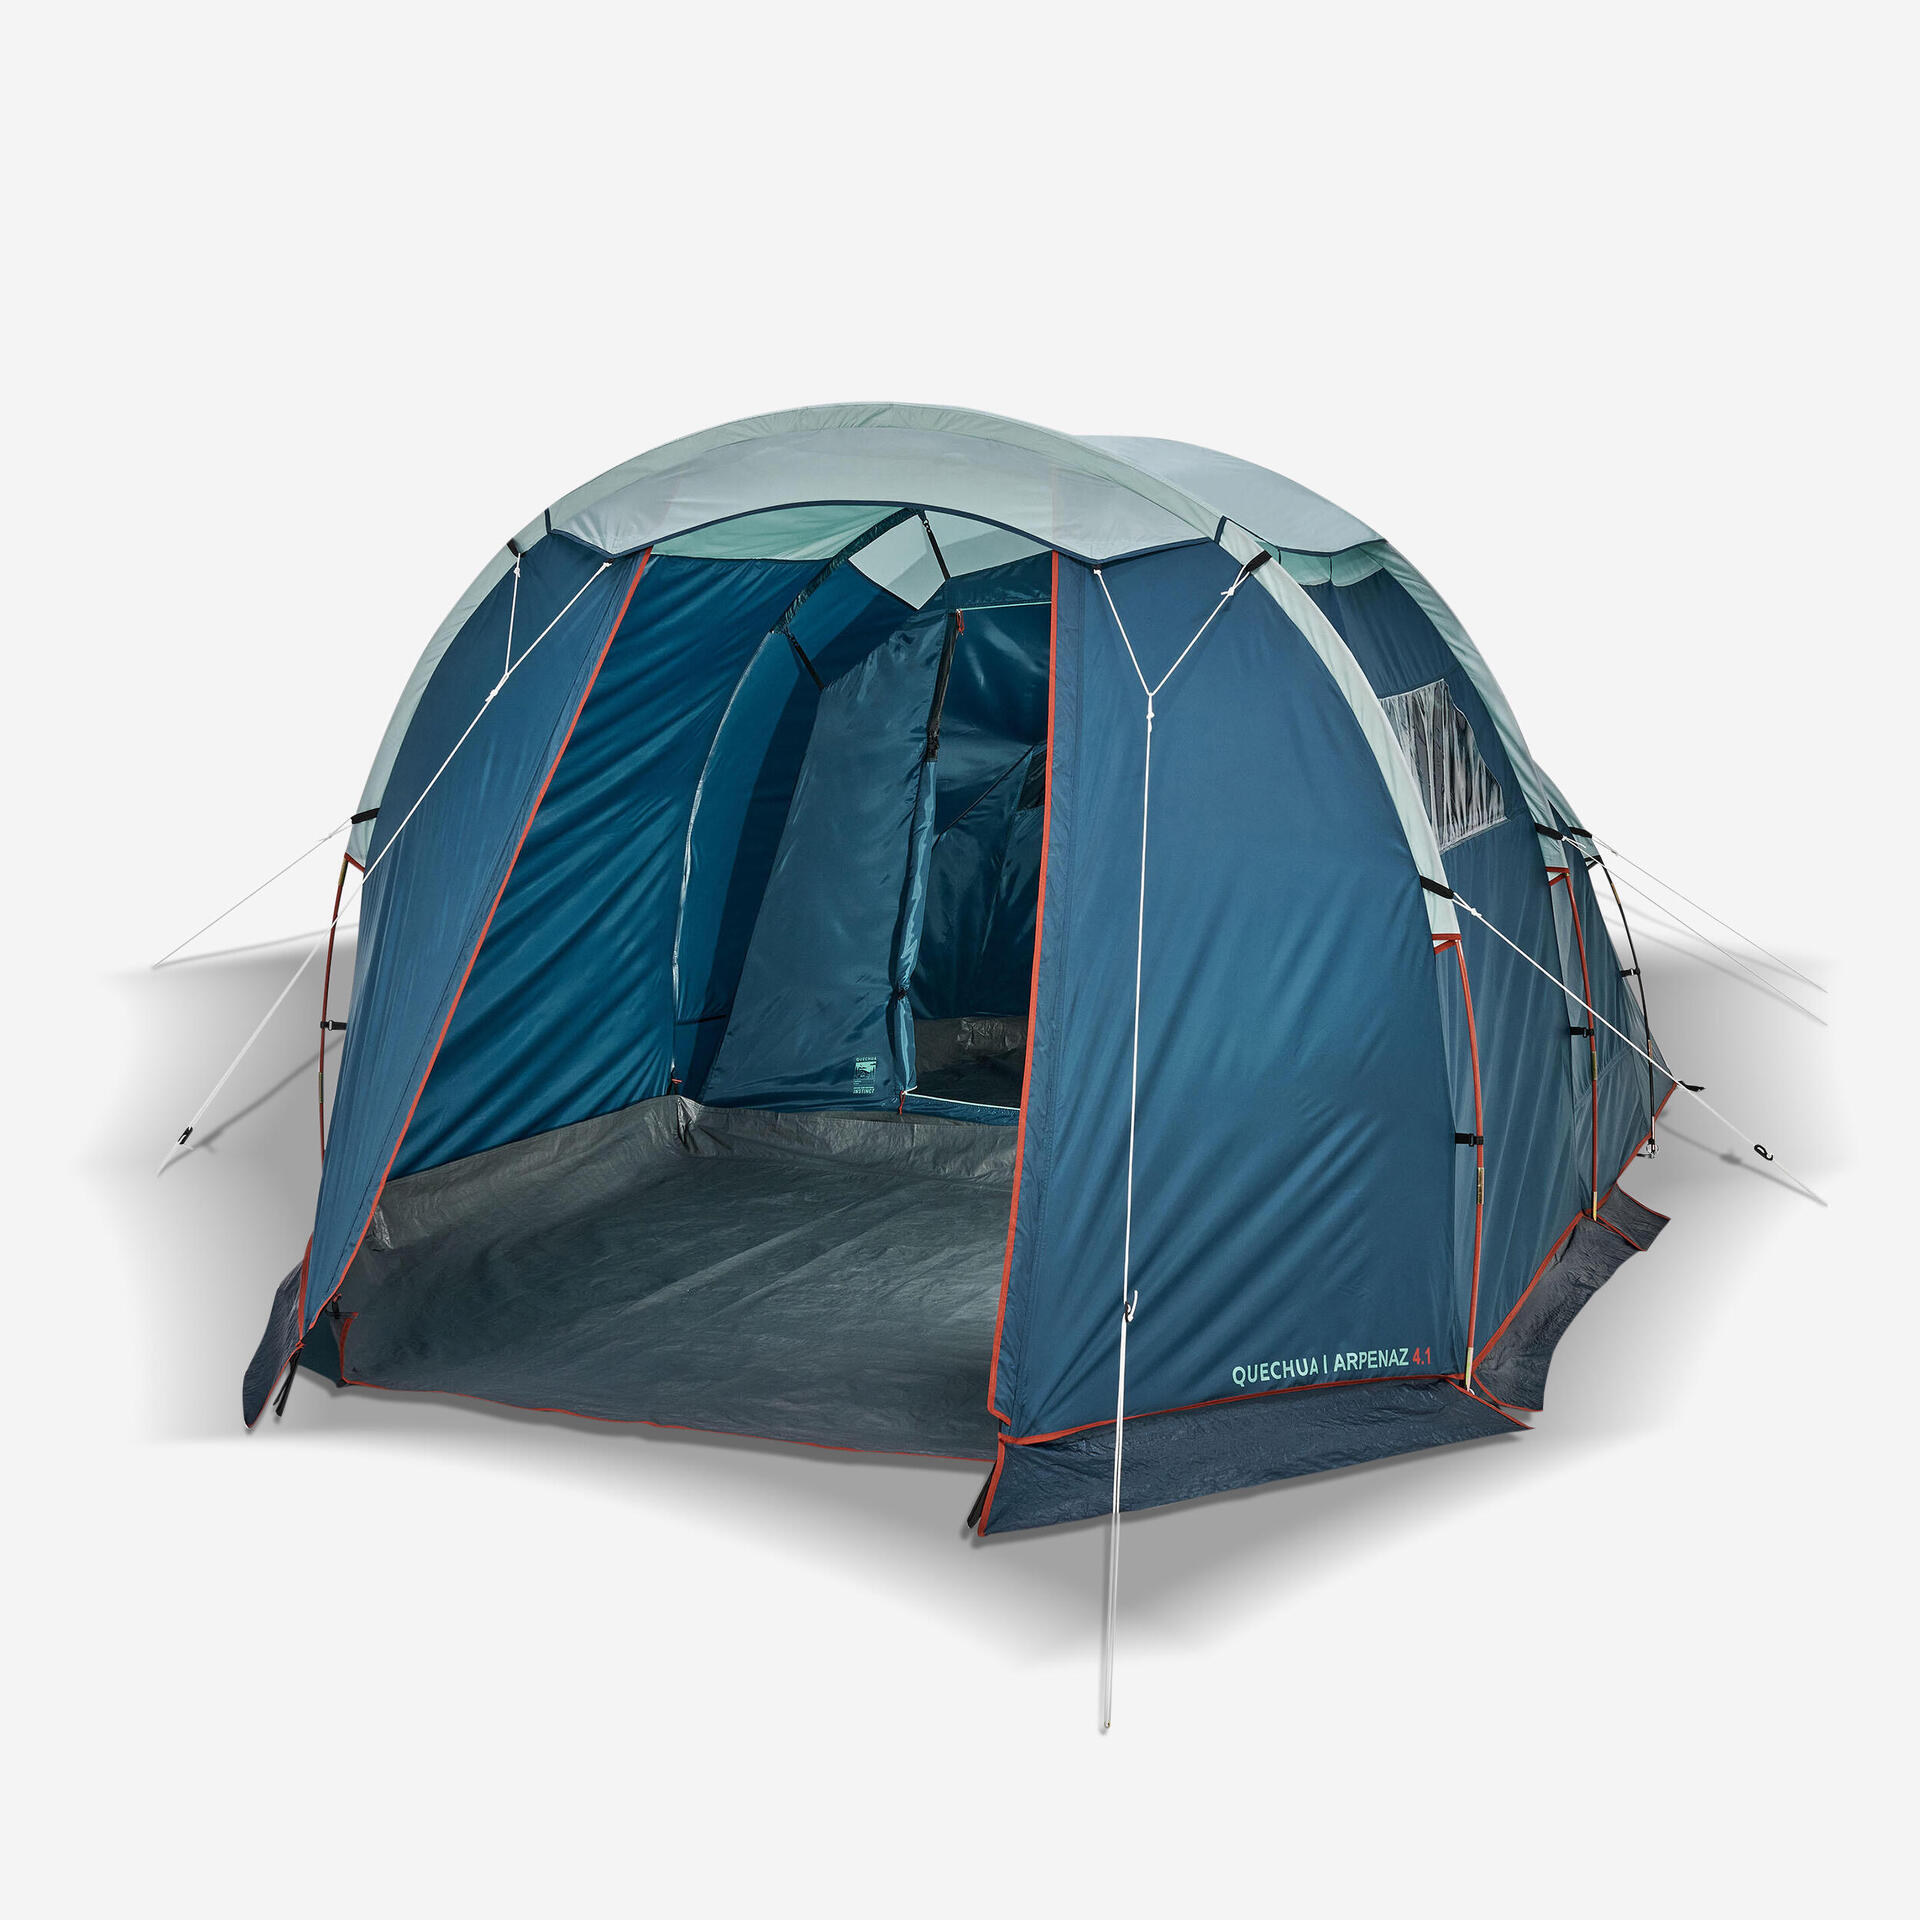 Come scegliere una tenda da Trekking o da Campeggio?